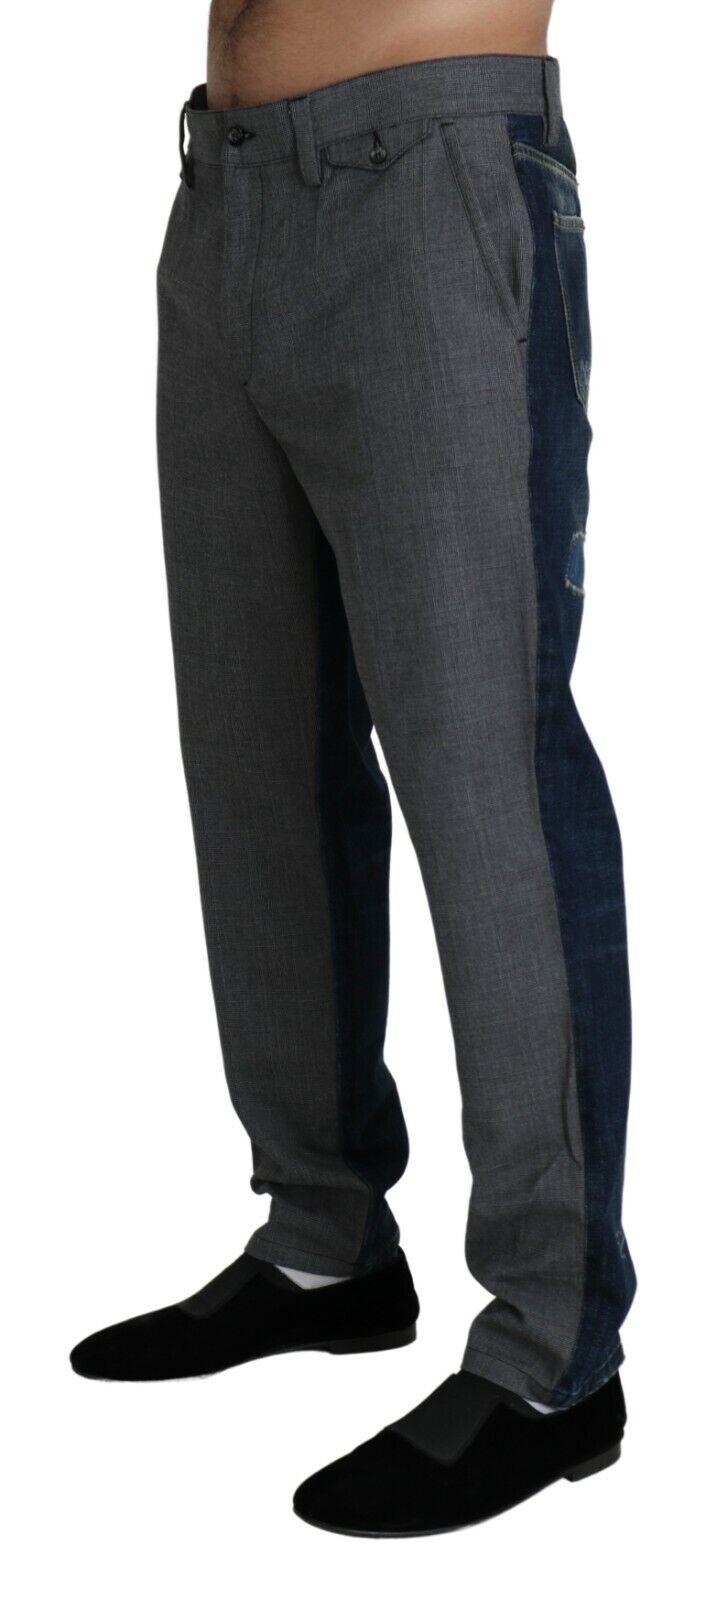 DOLCE & GABBANA Брюки Хлопковое серое платье Синие джинсовые брюки IT54 / W40 / XL 970 долларов США